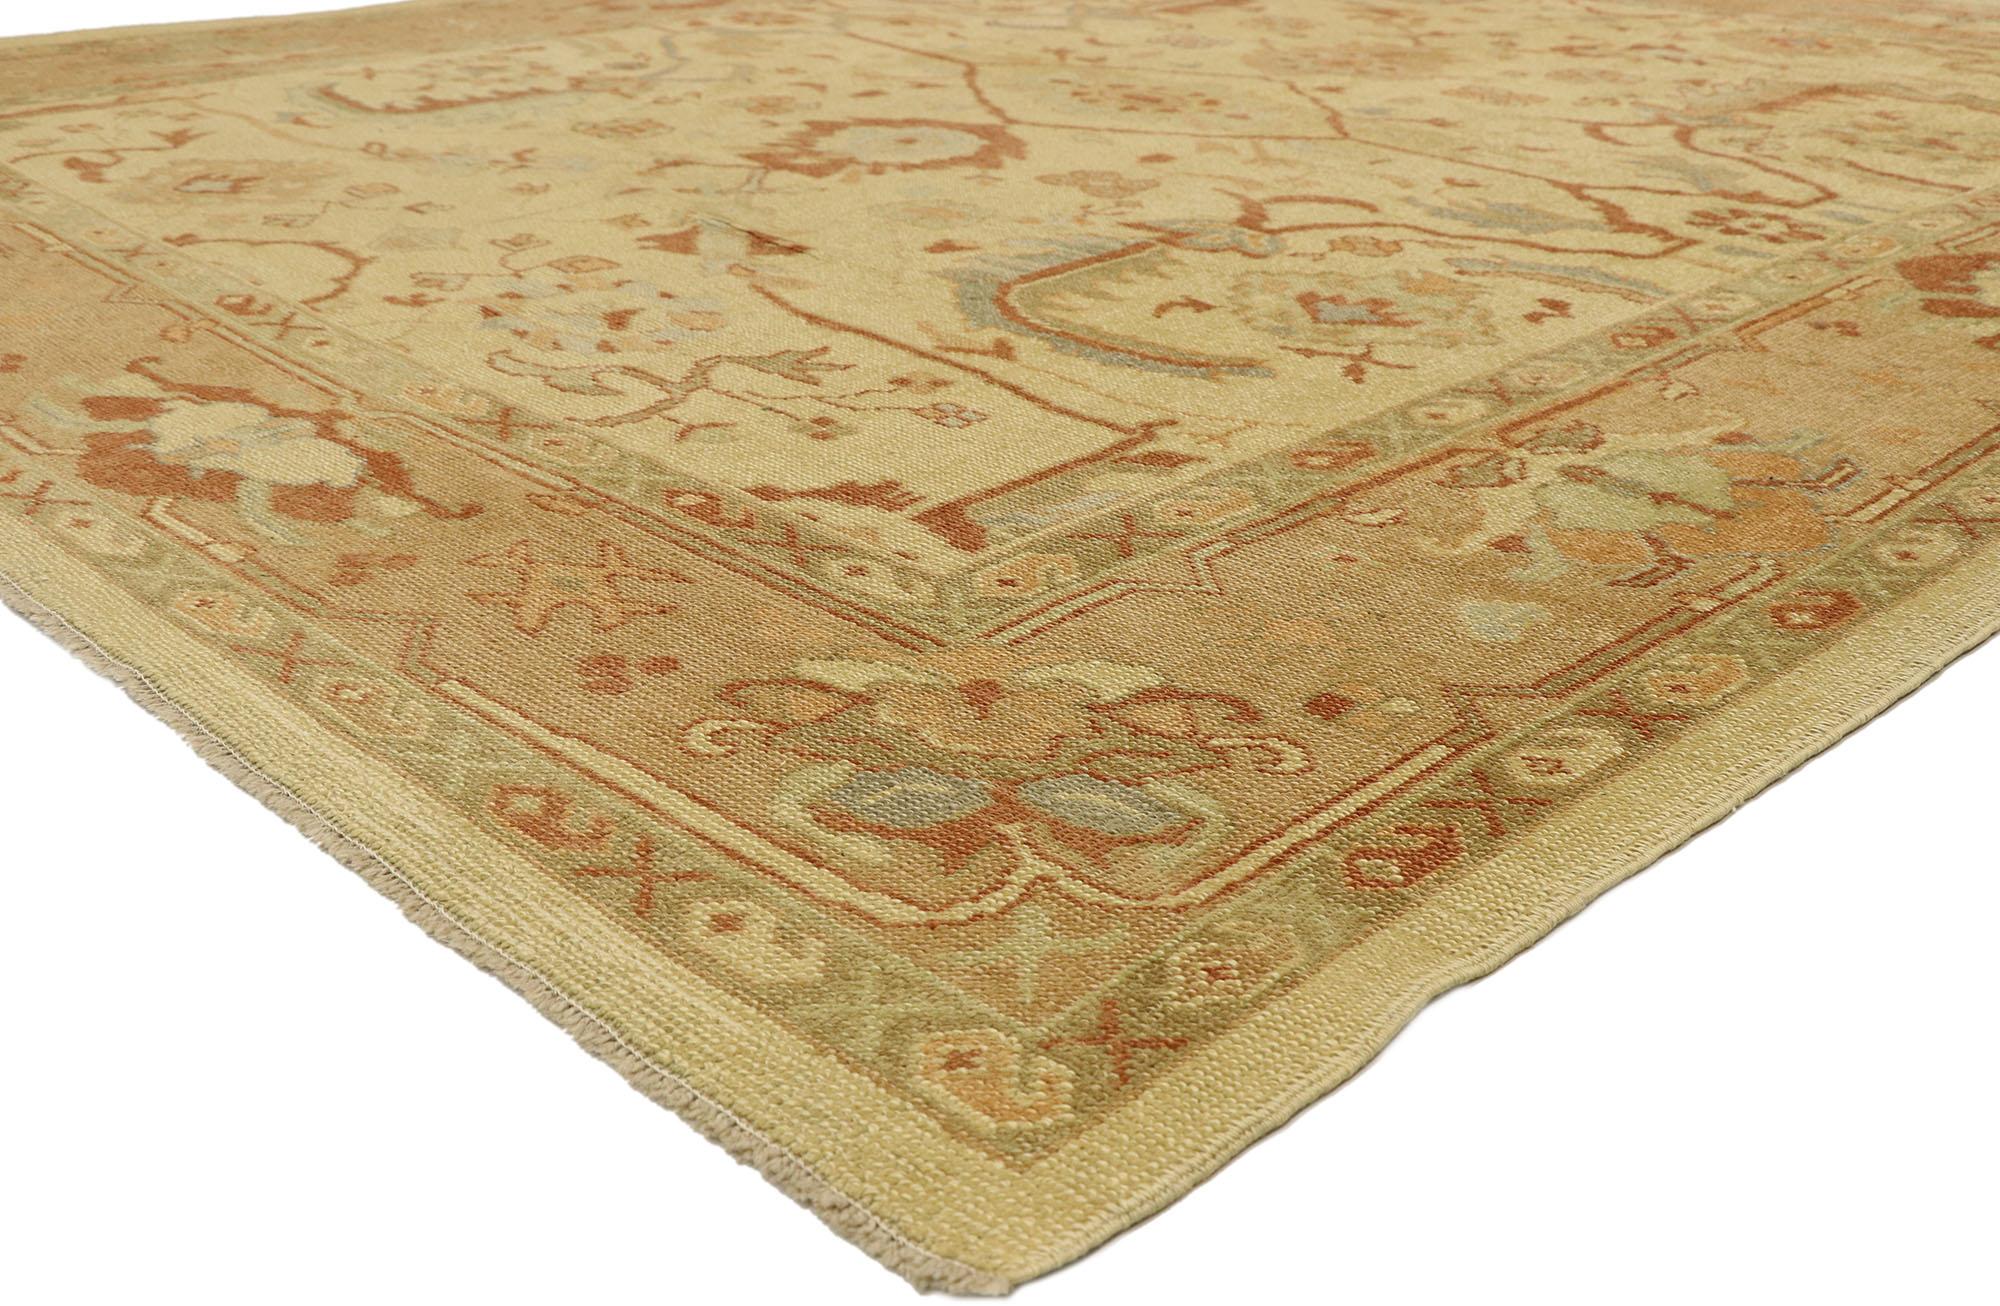 51862, nouveau tapis turc Oushak de style Arts & Crafts. Ce tapis Oushak turc contemporain en laine nouée à la main présente un motif Herati à grande échelle sur un champ abrasé de couleur champagne. Le motif classique Herati, également connu sous